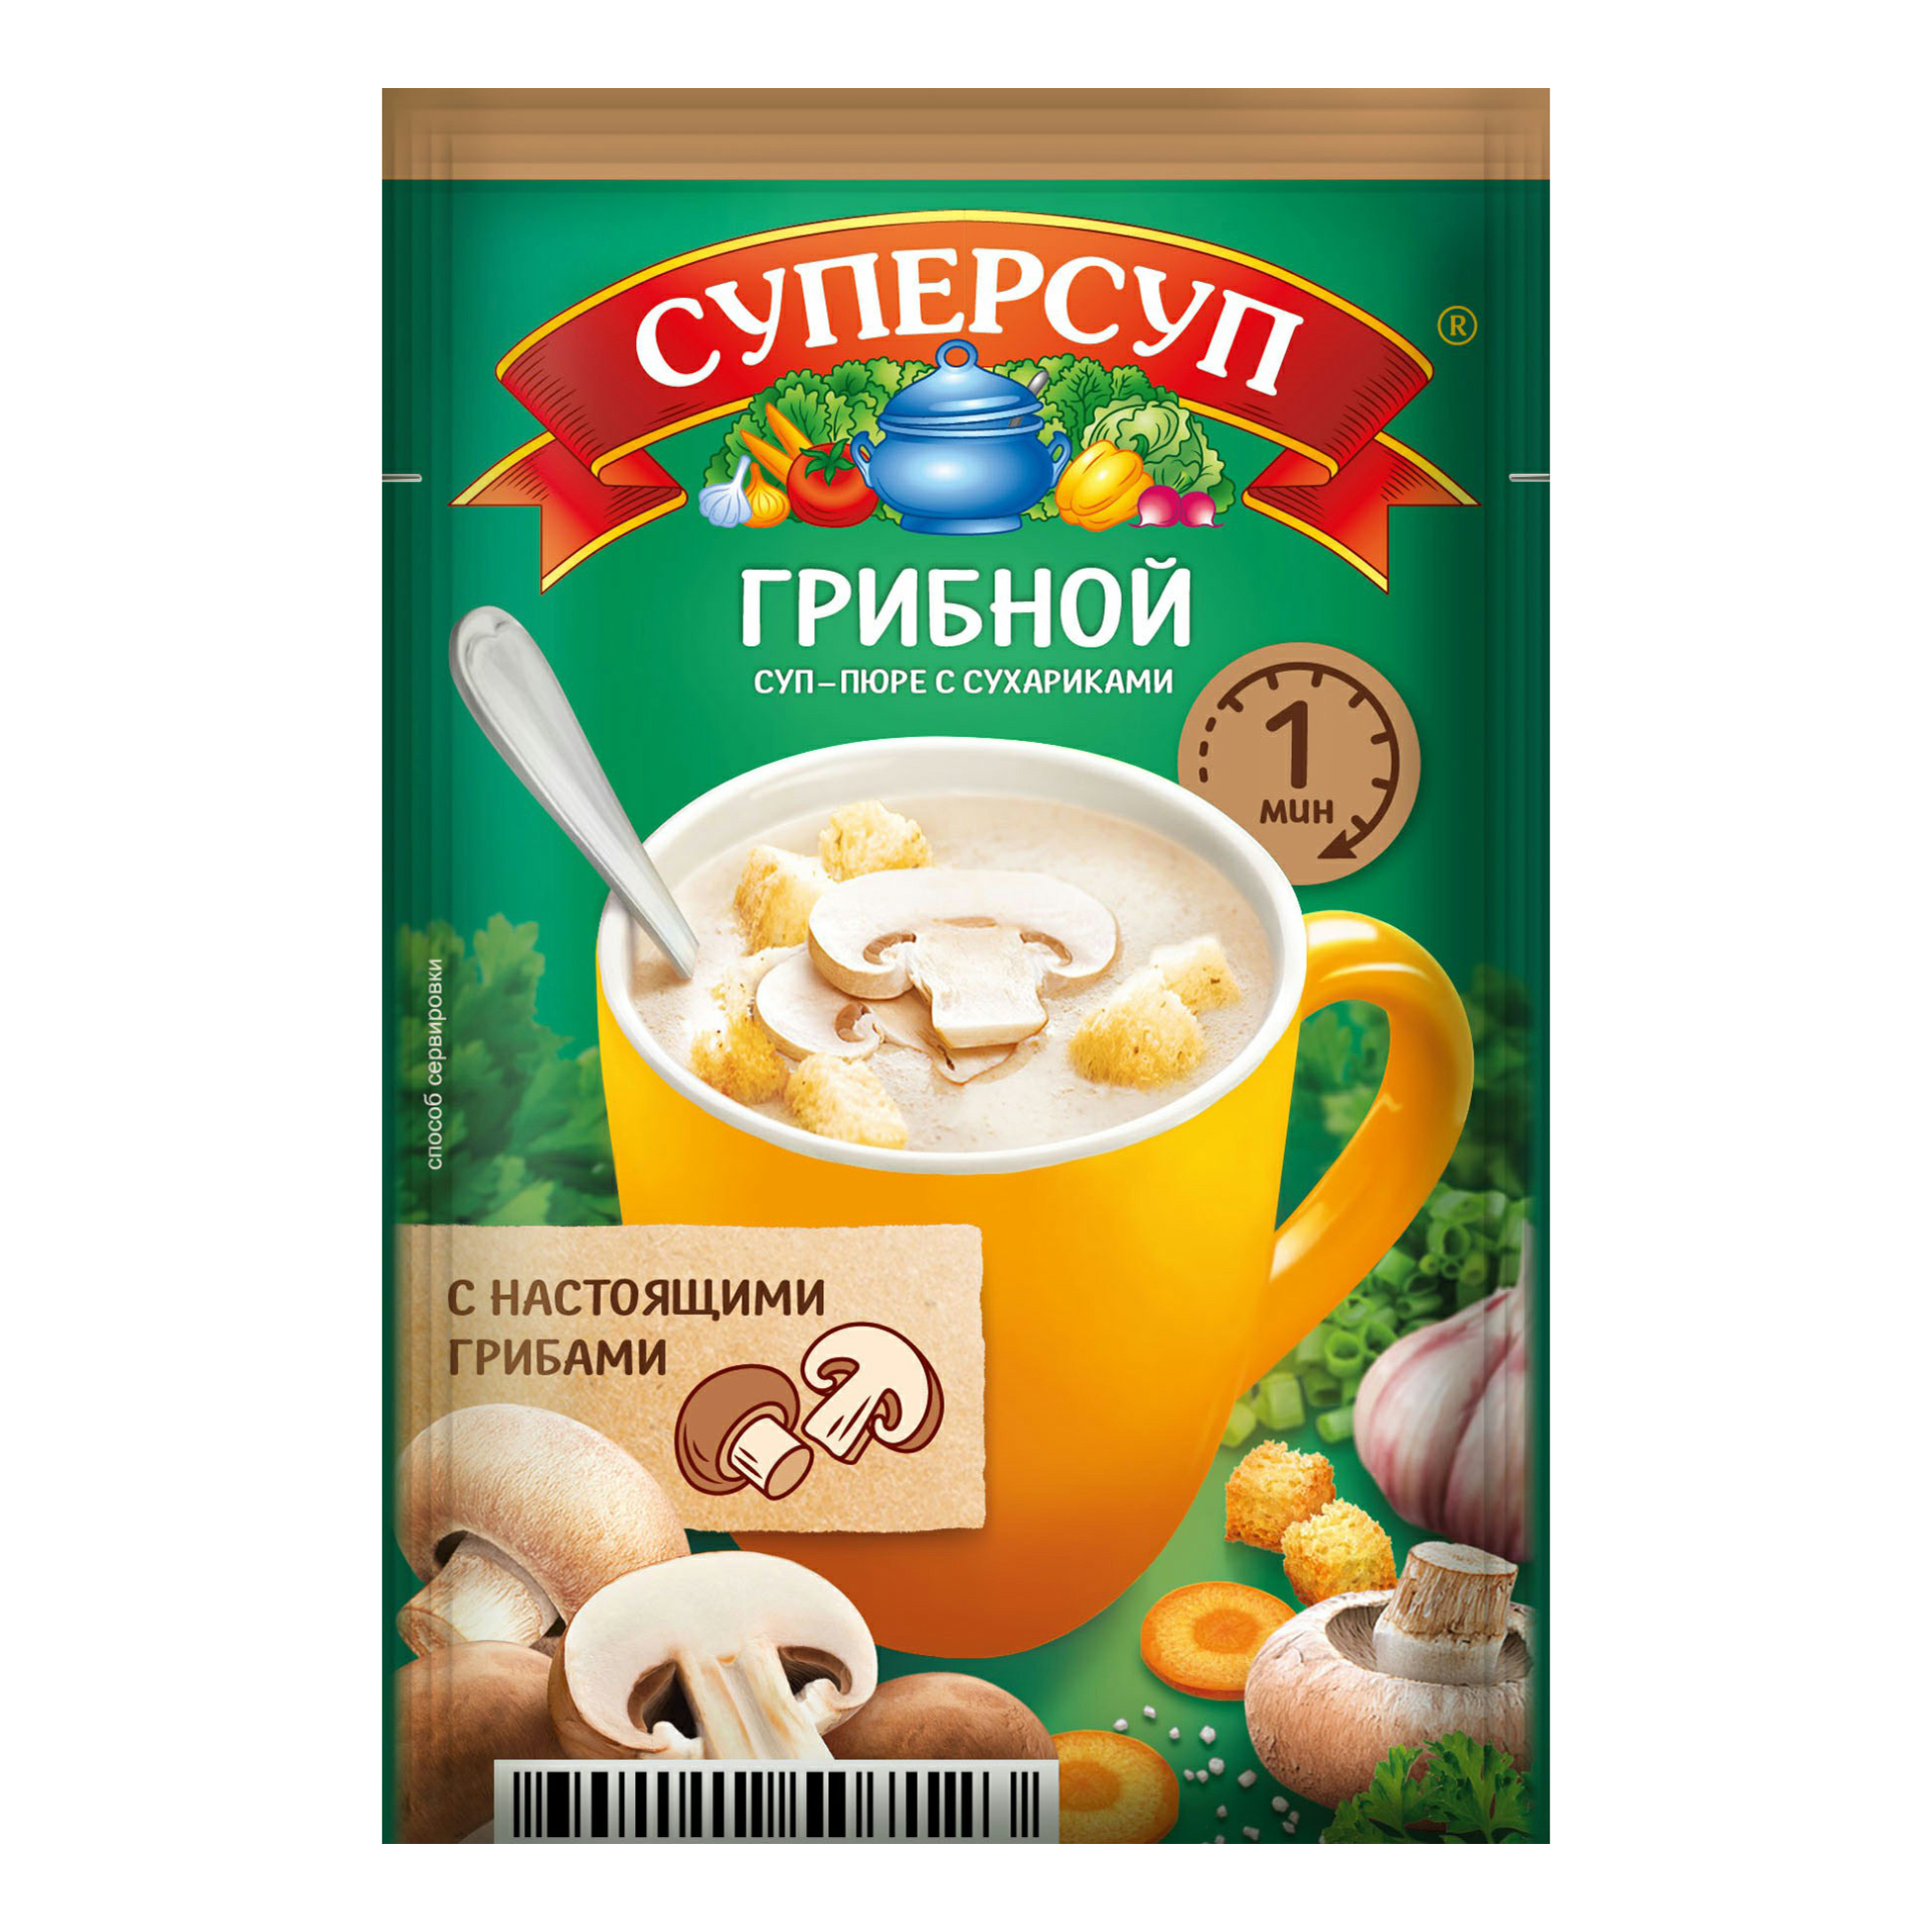 Суп-пюре Суперсуп грибной с сухариками быстрого приготовления 18 г - купить в Мегамаркет Москва Пушкино, цена на Мегамаркет